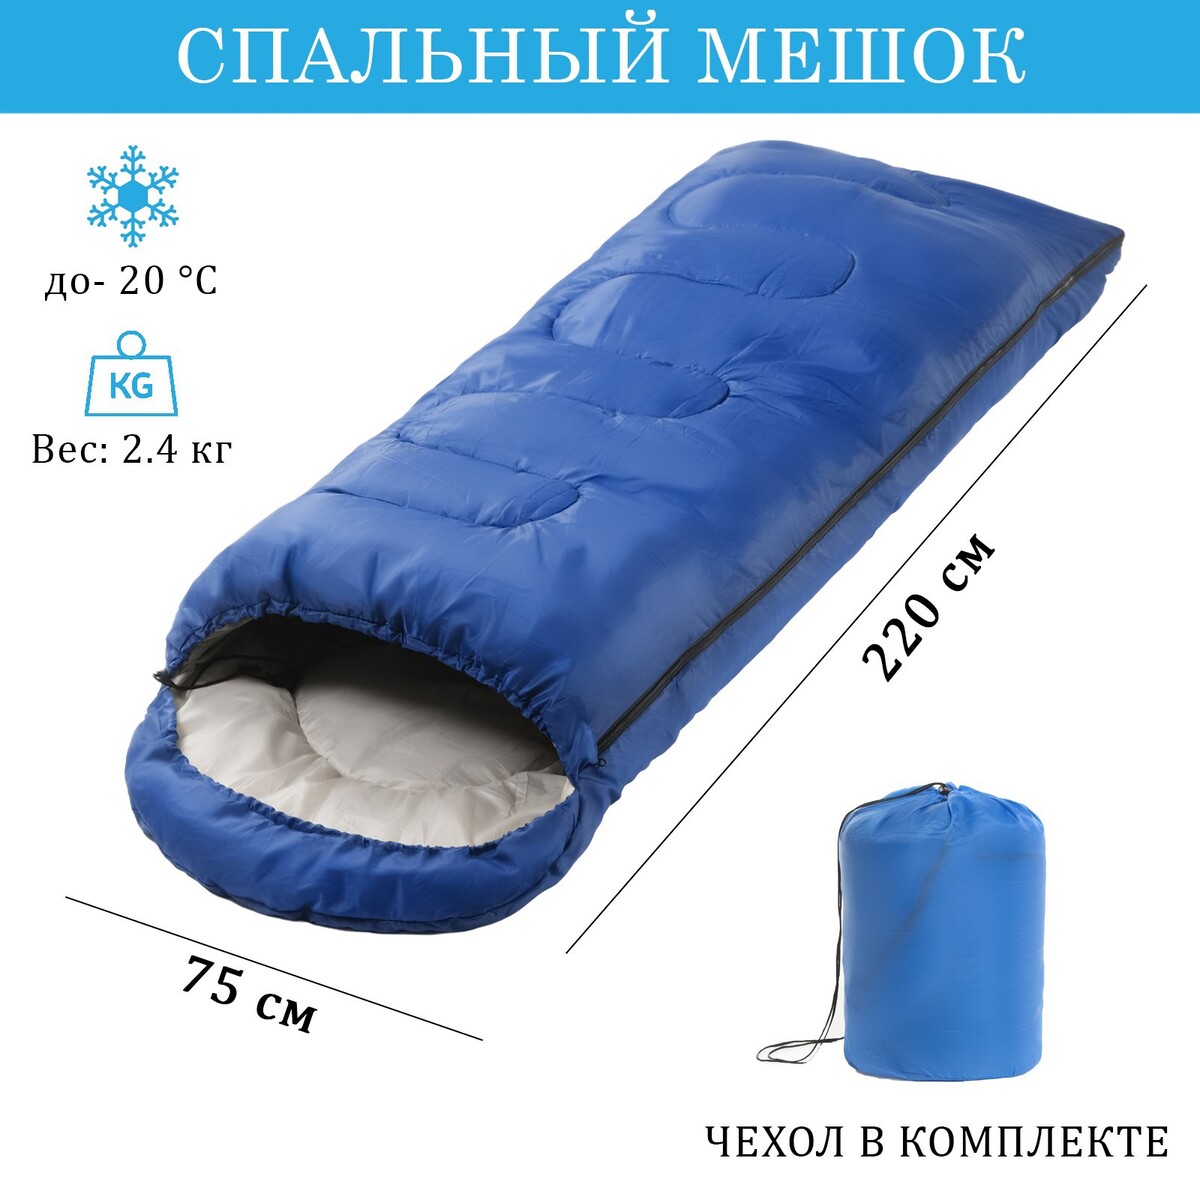 Спальный мешок туристический, 220 х 75 см, до -20 градусов, 700 г/м2, синий спальный мешок туристический atemi quilt 200rn 200 г м2 12 с правый